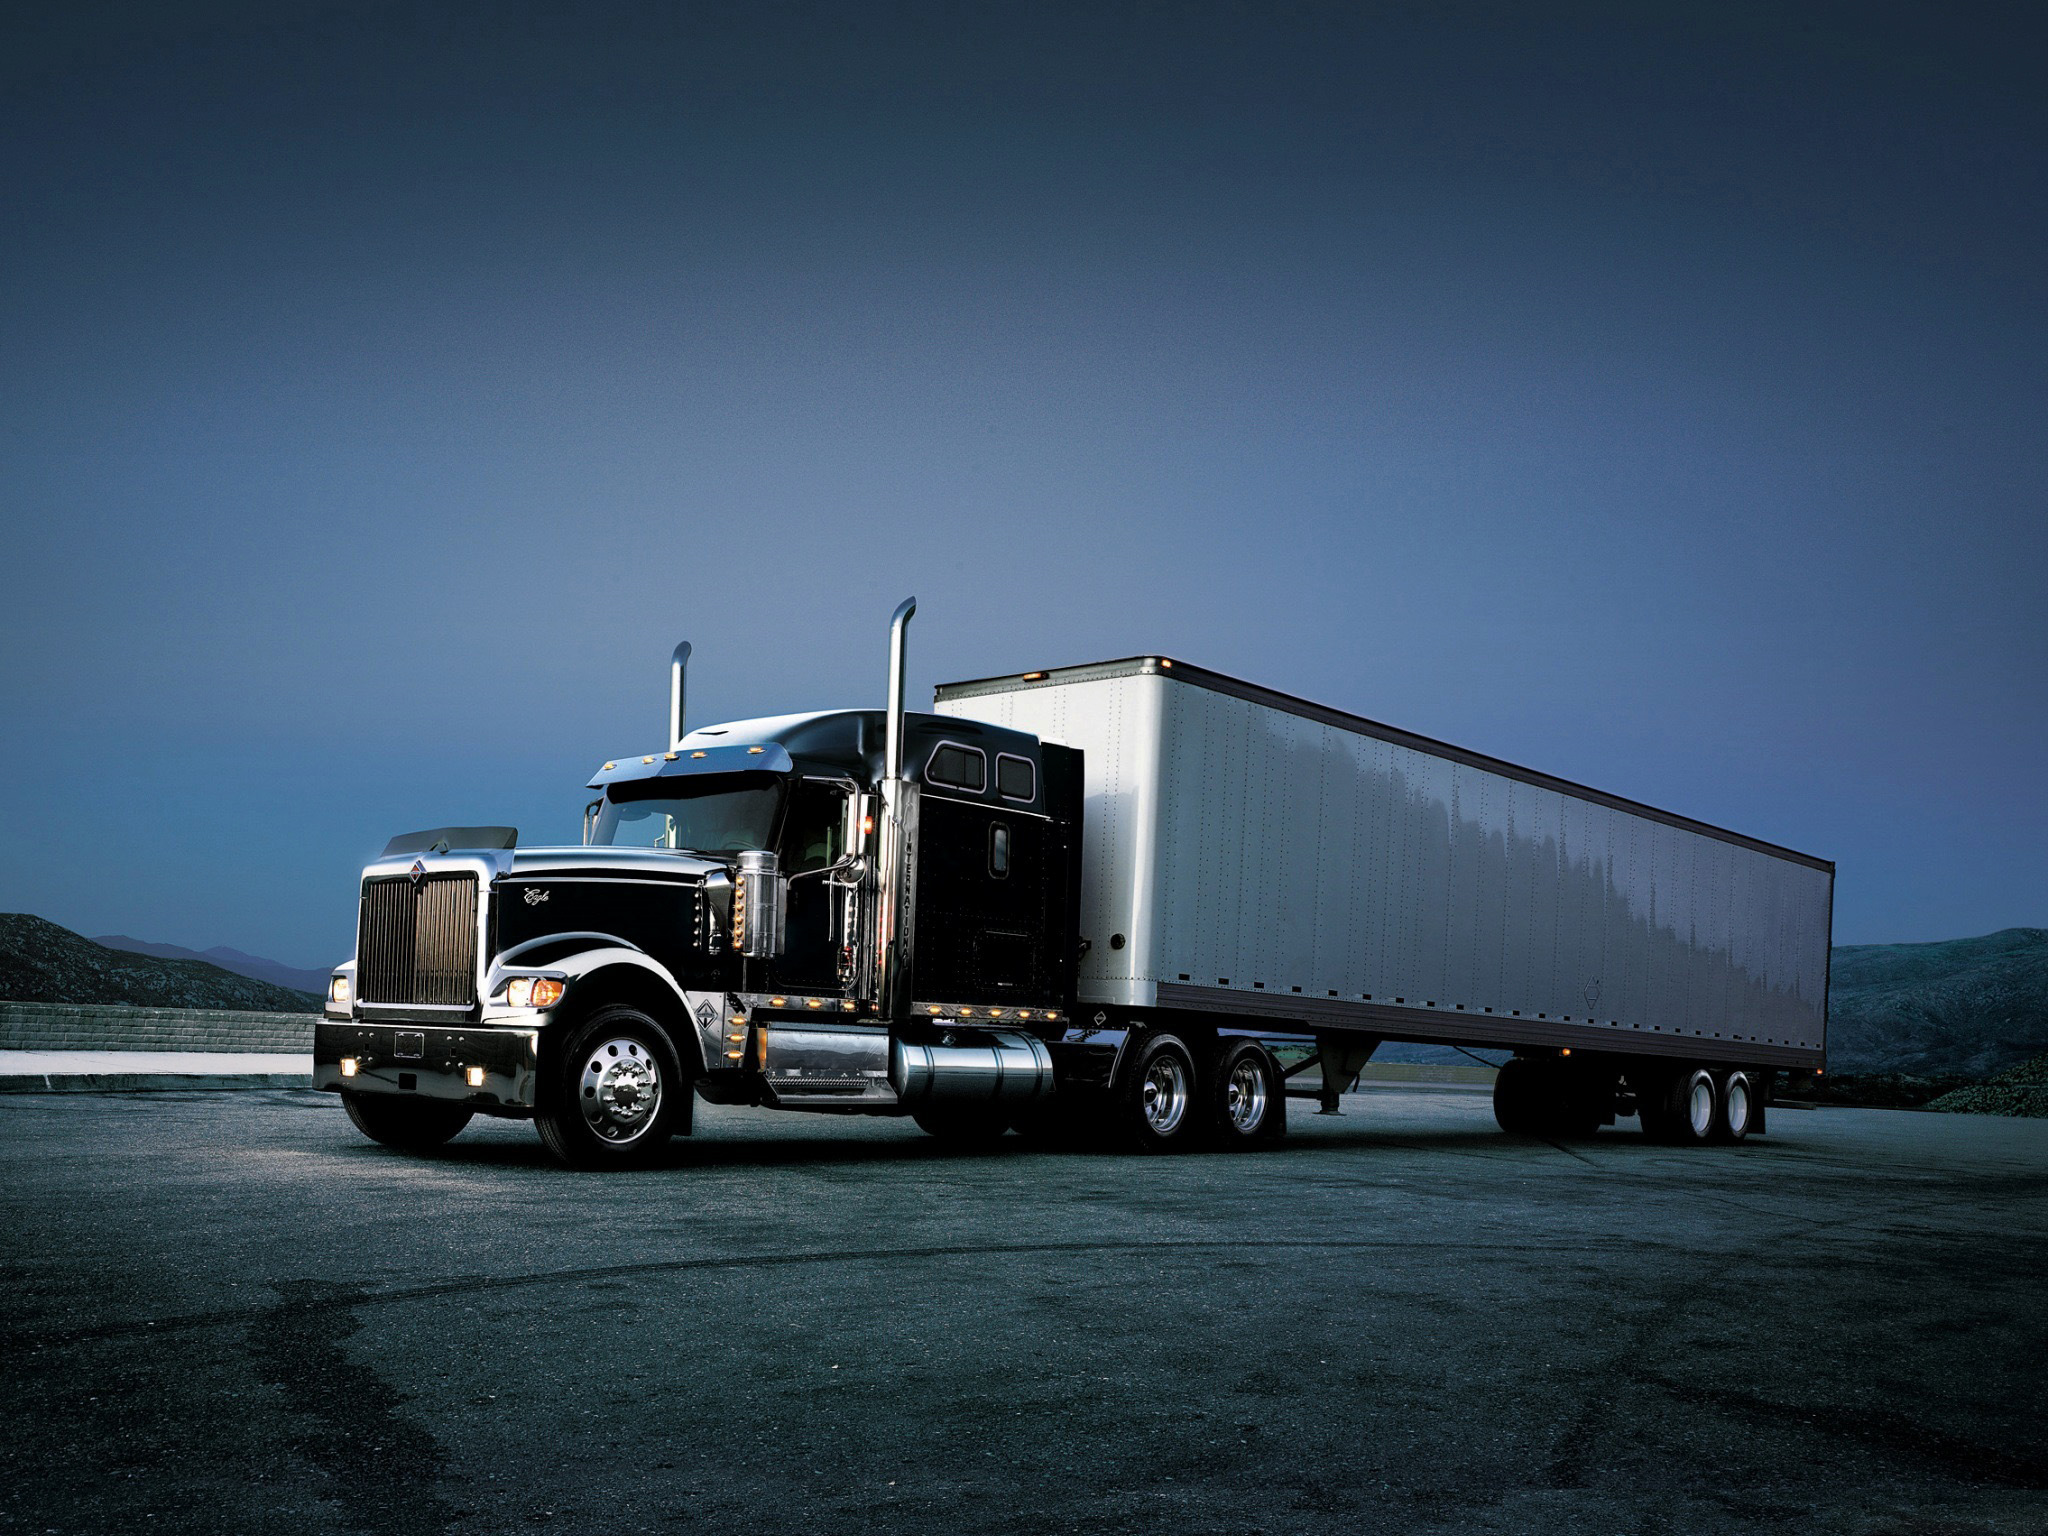 Download full size Trucks wallpaper / Vehicles / 2048x1536